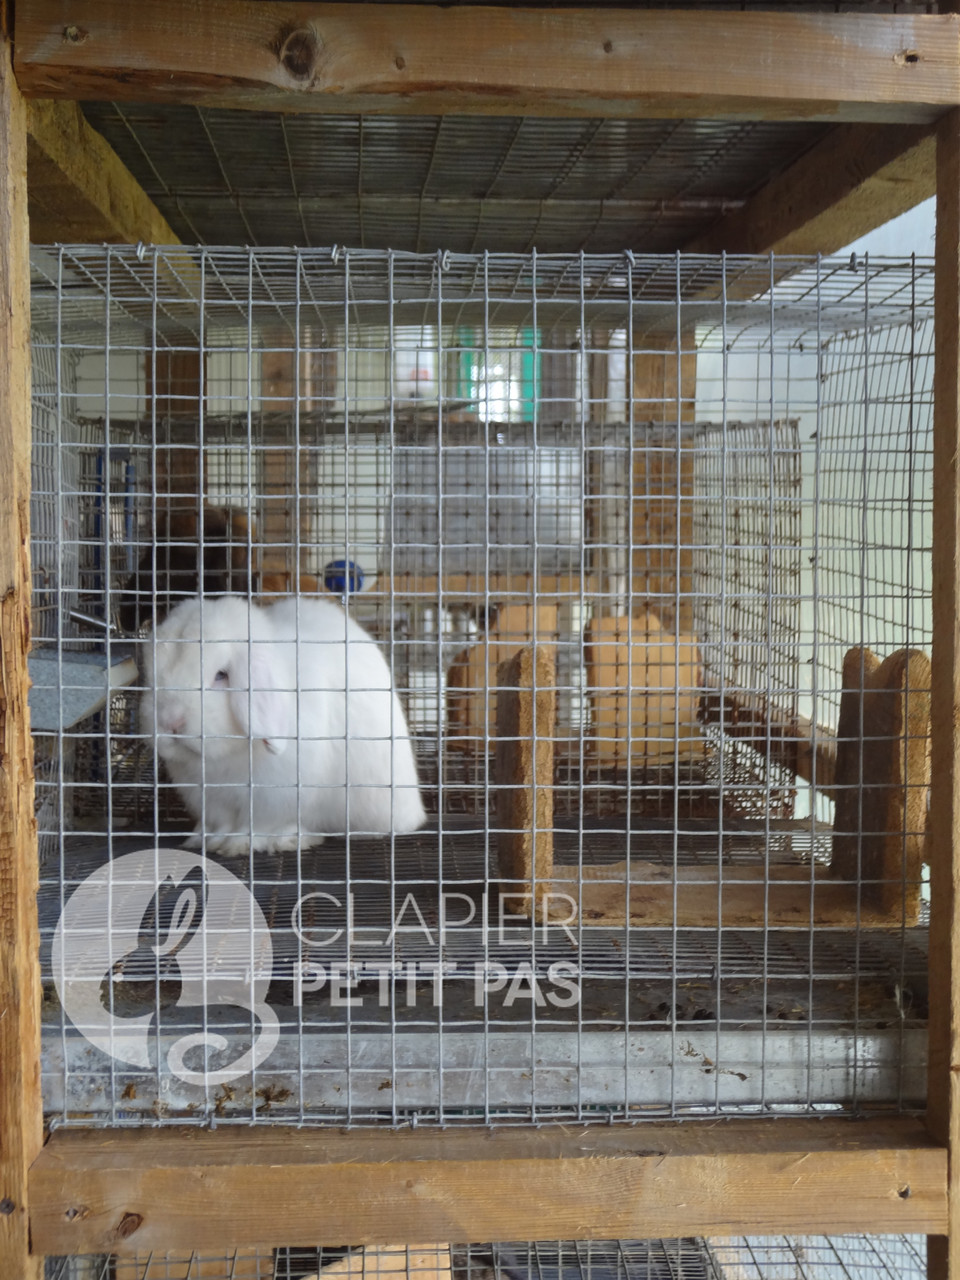 Chaque cage en grillage est équipé de planches de bois afin que le lapin puisse s'y reposer les pieds et gruger à son gré